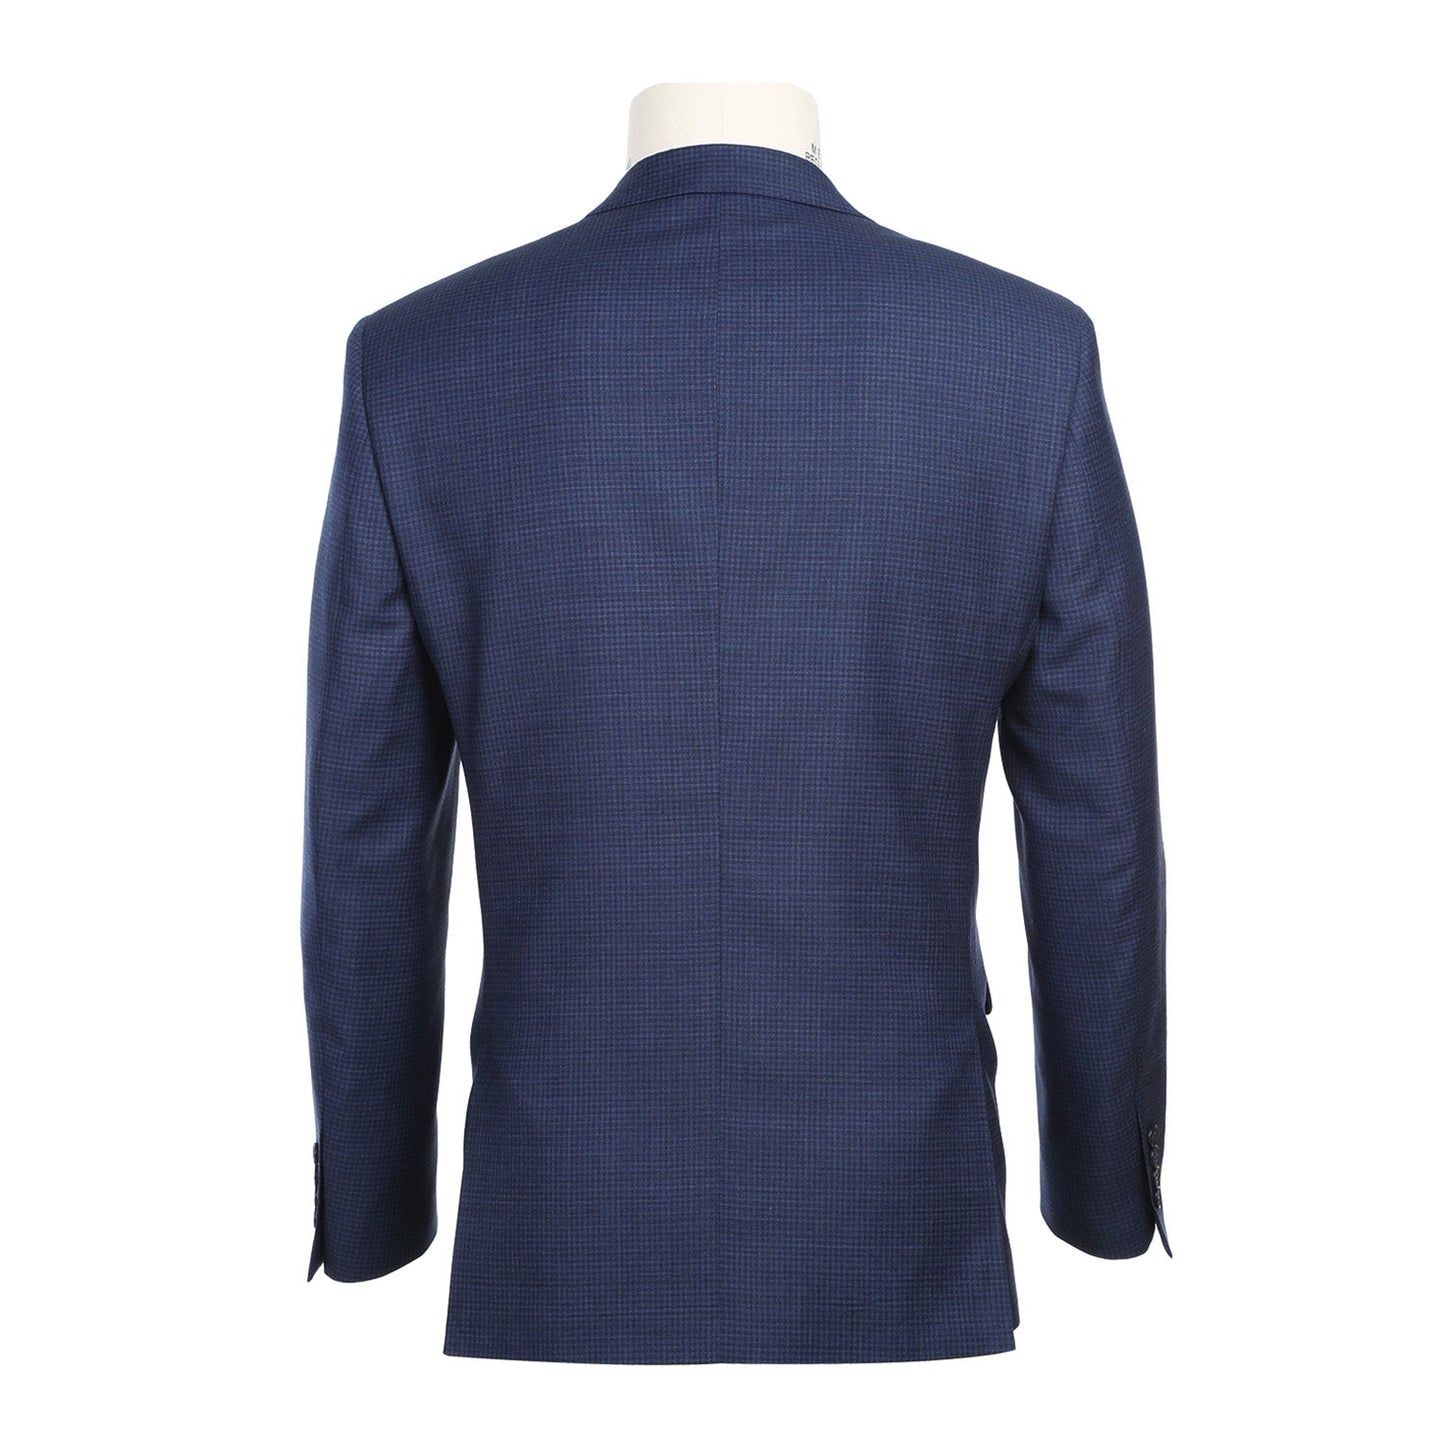 564-4 Men's Slim Fit Wool Blue Check Suit